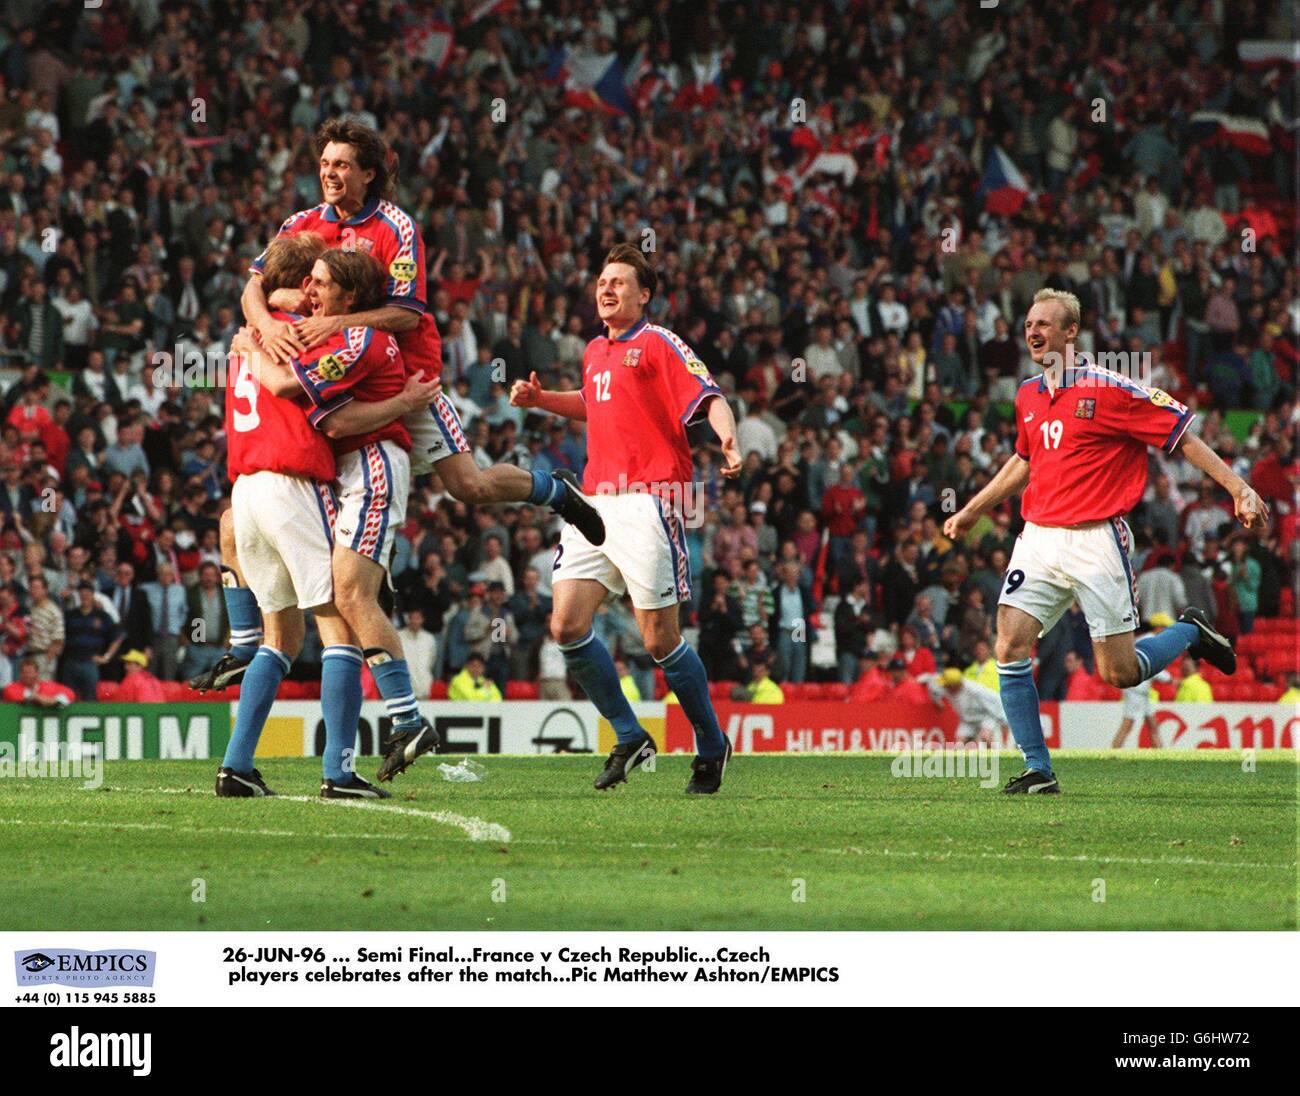 Euro 96. Semi Final. France v Czech Republic. Czech players celebrate after the match Stock Photo